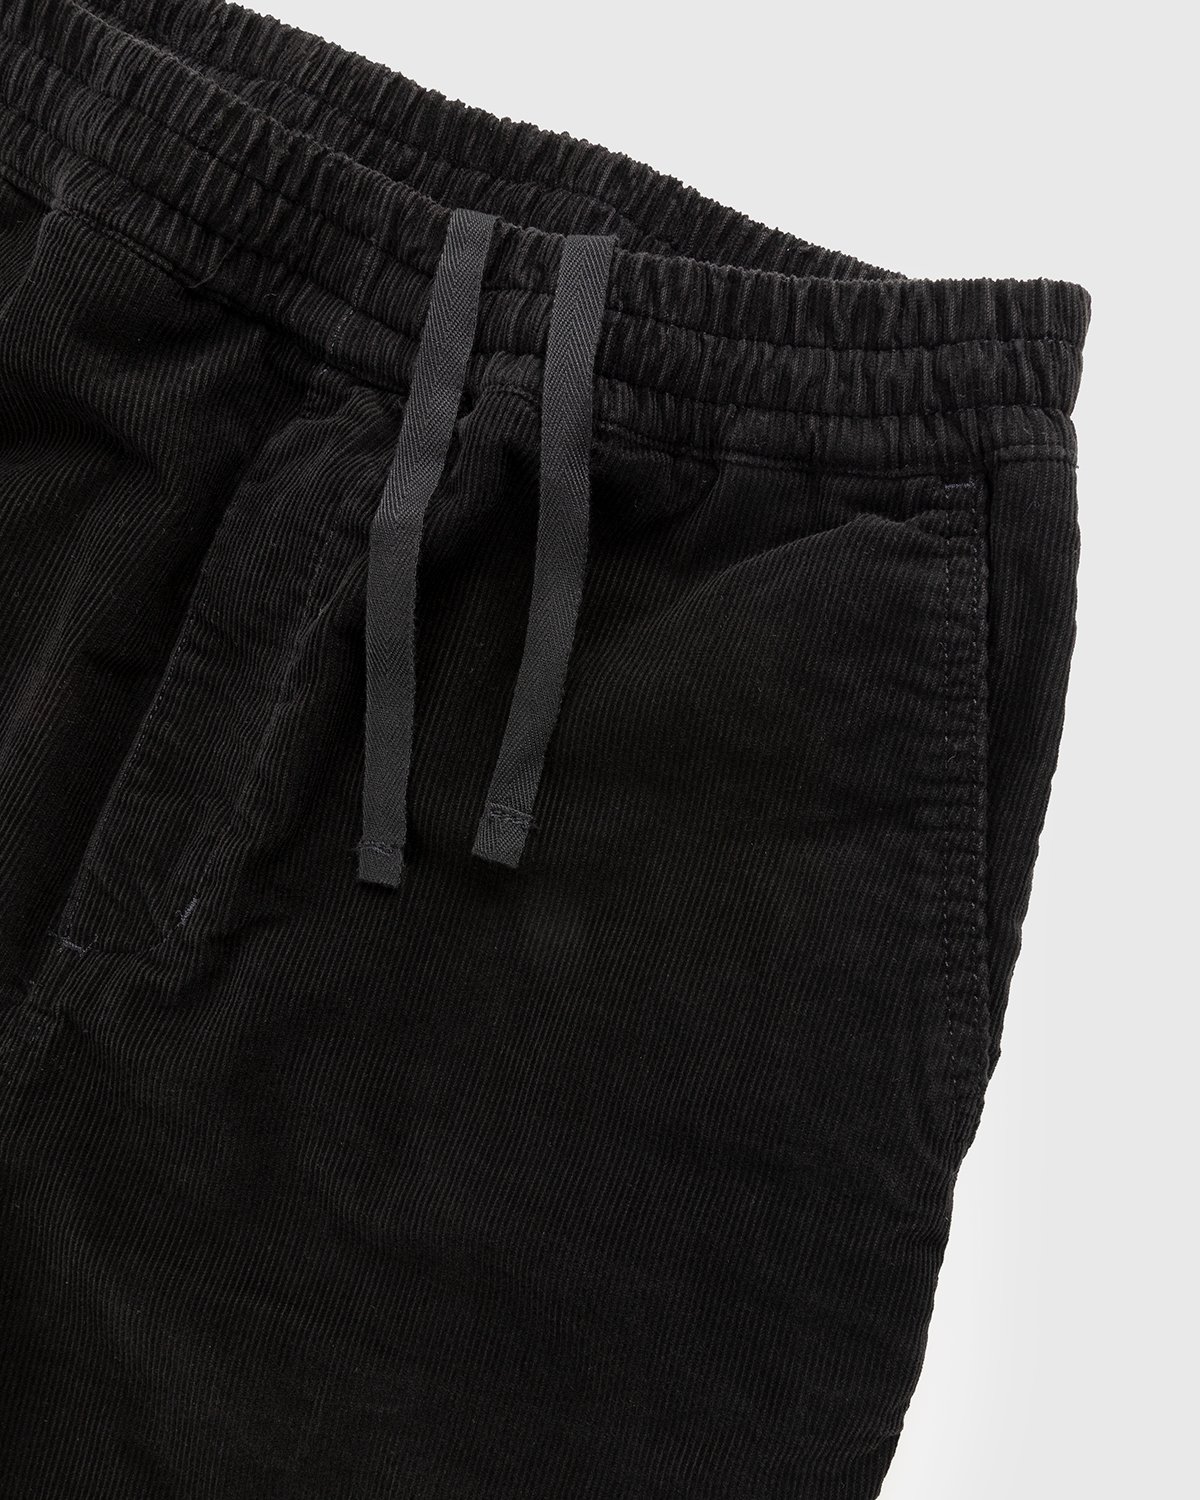 Carhartt WIP - Flint Pant Black Rinsed - Clothing - Black - Image 4